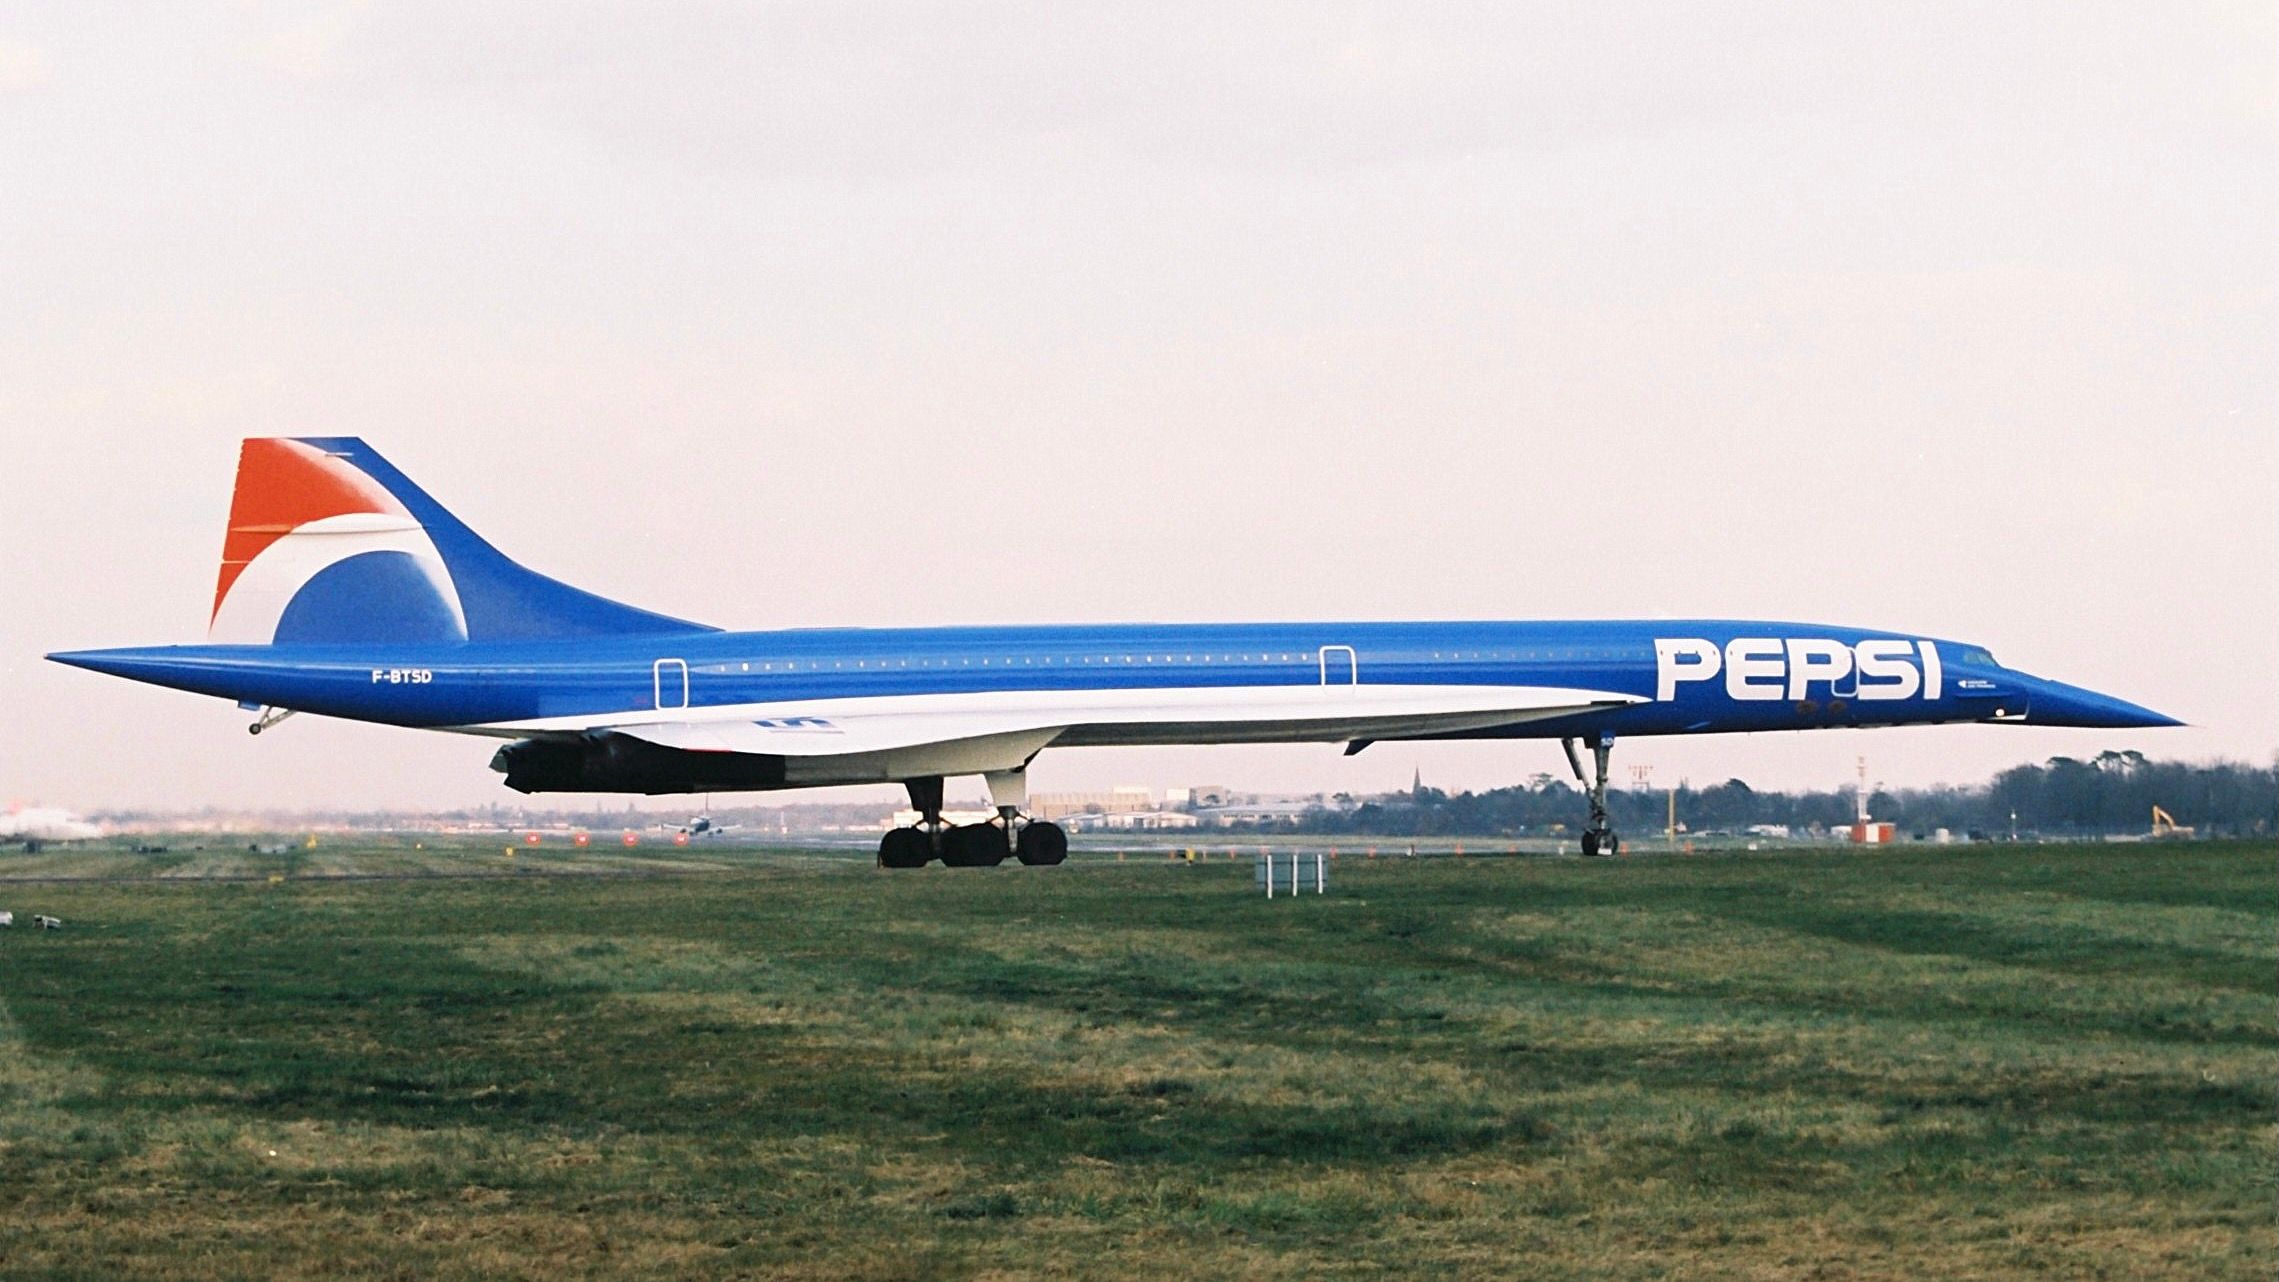 Pepsi Concorde